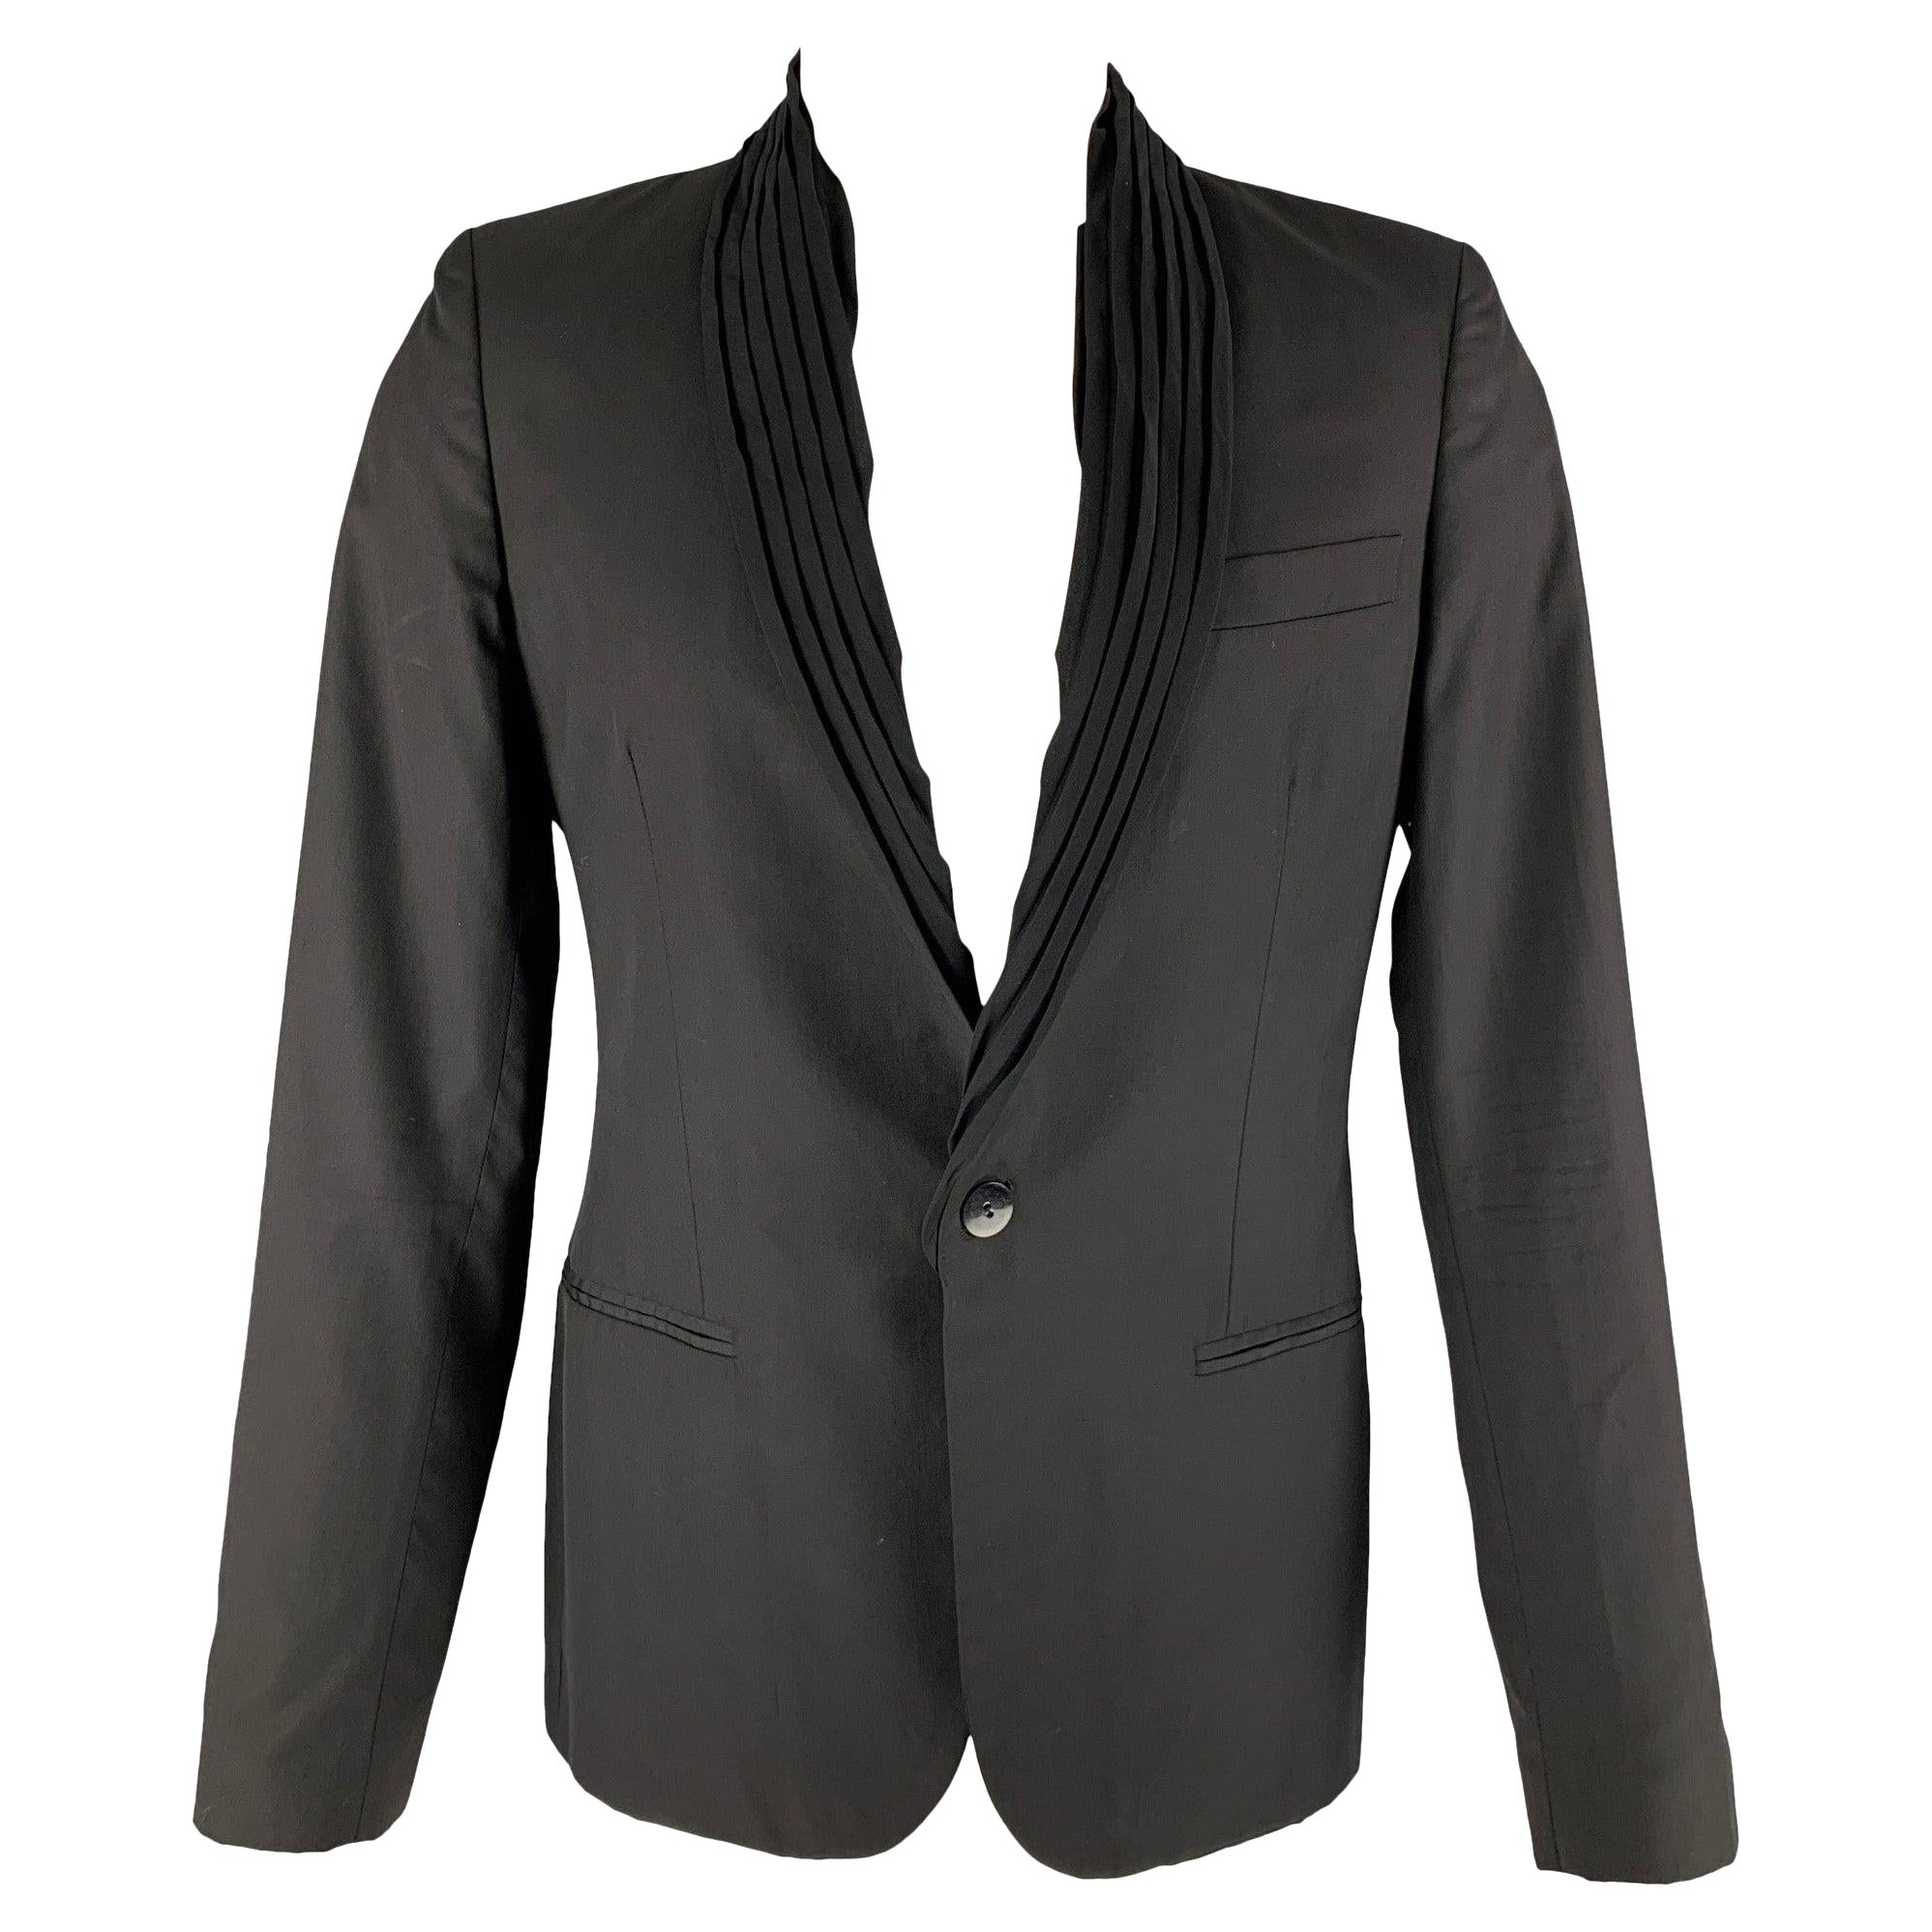 GAULTIER2 JEAN PAUL GAULTIER Size 38 Black Wool Silk Shawl Collar Sport Coat For Sale